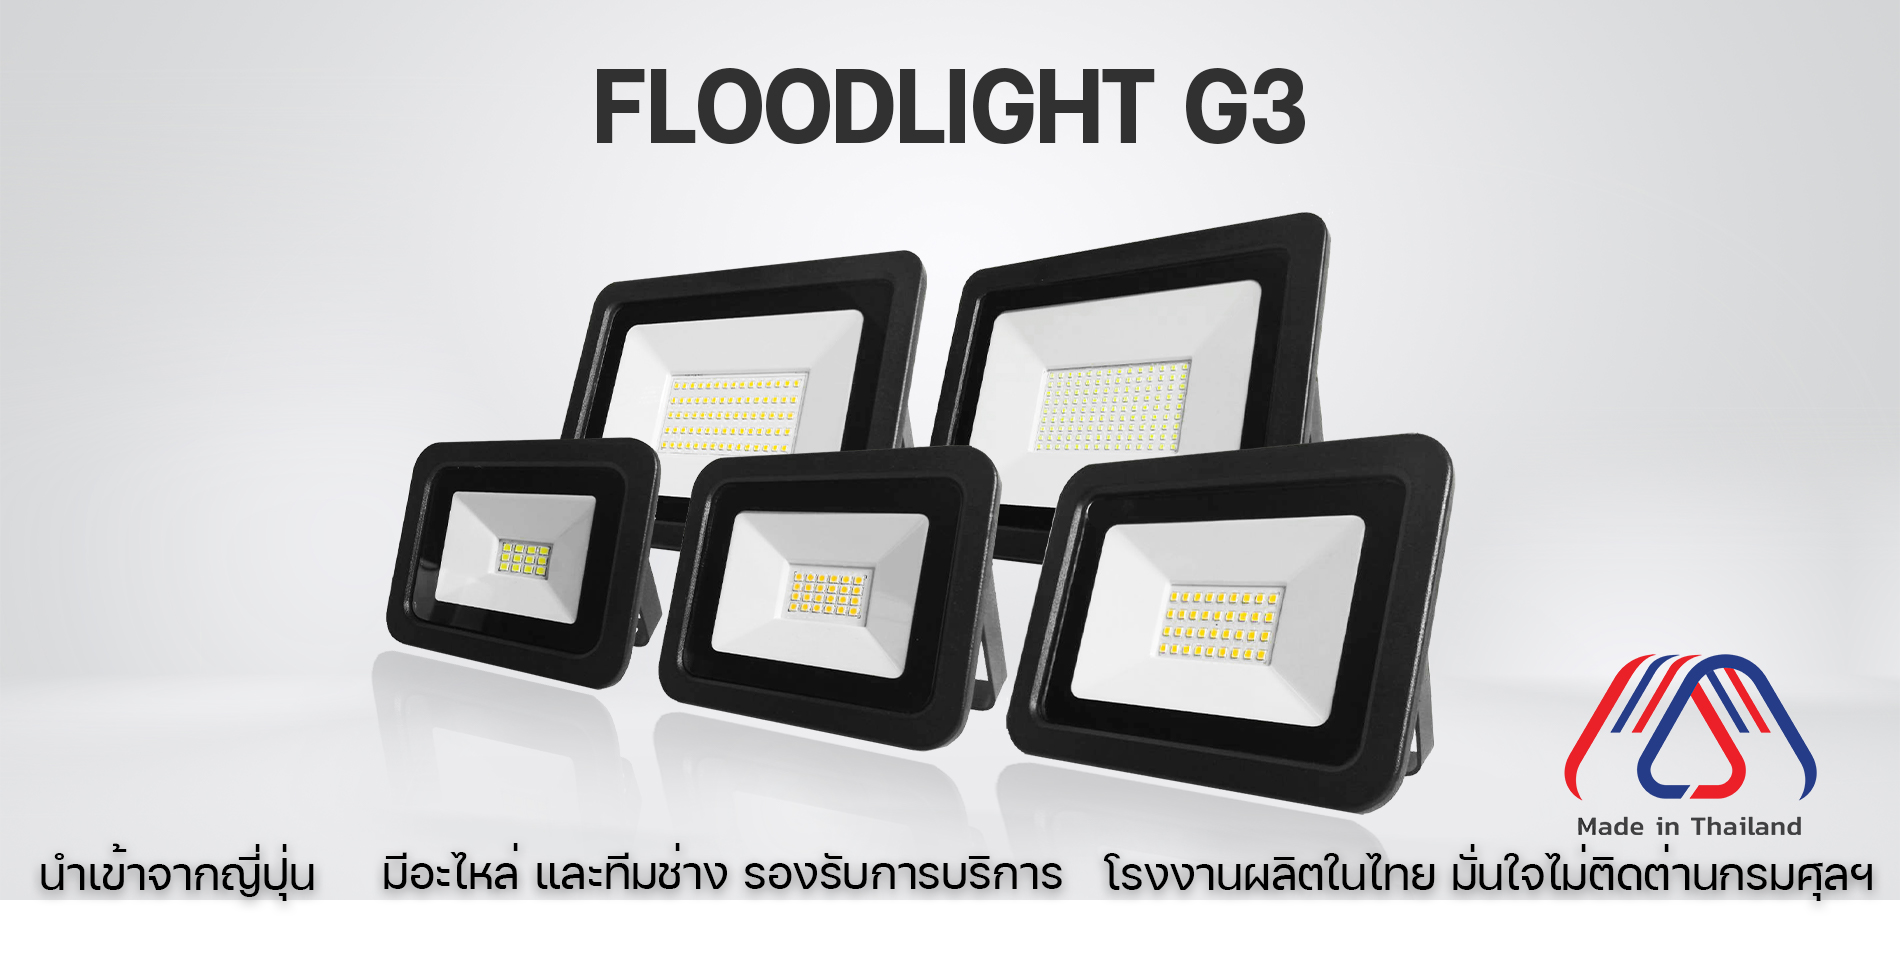 1 FLOODLIGHT G3